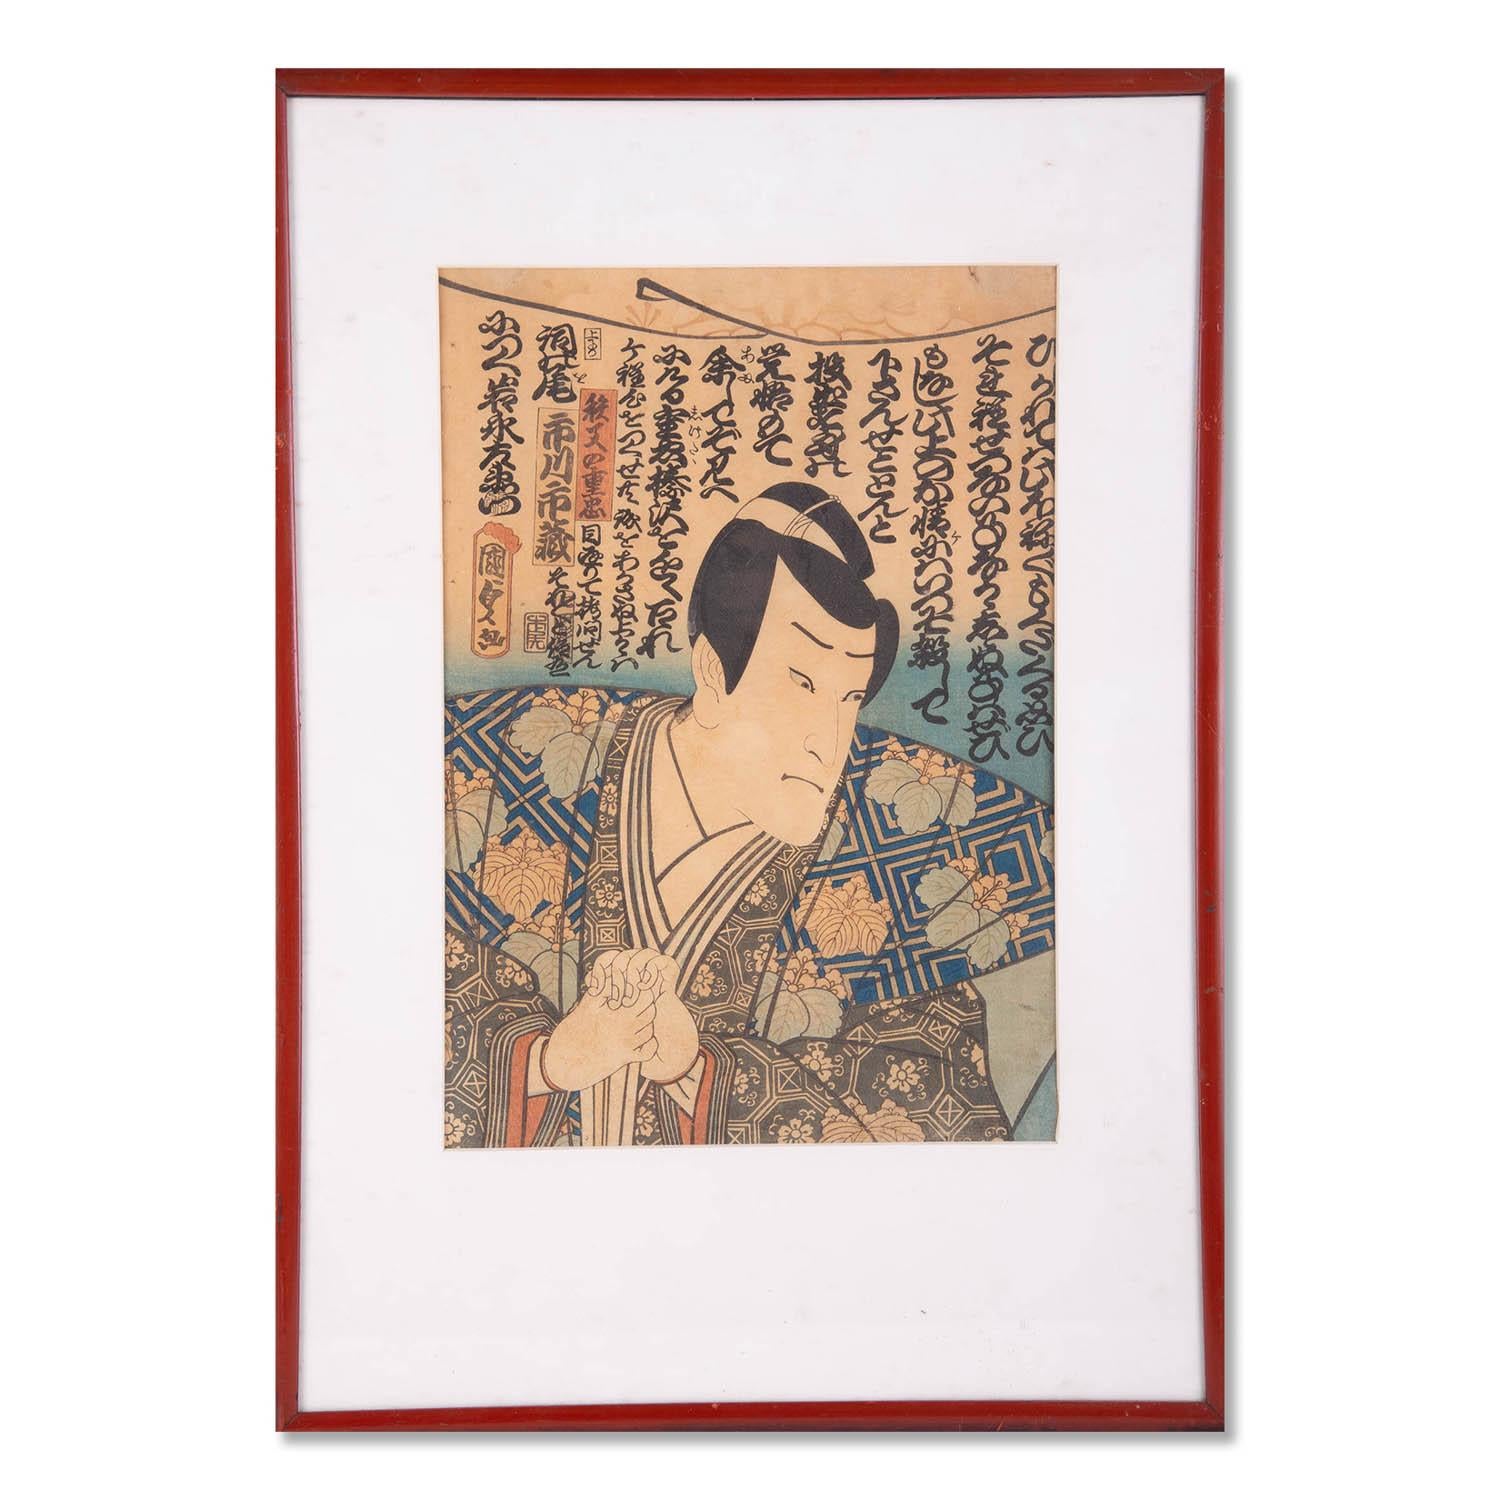 Titel:  Porträt eines Samurai
 Medium: Farbholzschnitt
 Stil: Ukiyo-e
 Größe: 13 1/2"" x 9 1/2""
 Rahmen Größe: 18 1/2"" x 14 1/2""

 Unterschrift: Kunisada
 
 Provenienz: Collection'S aus Nachlass in New Jersey